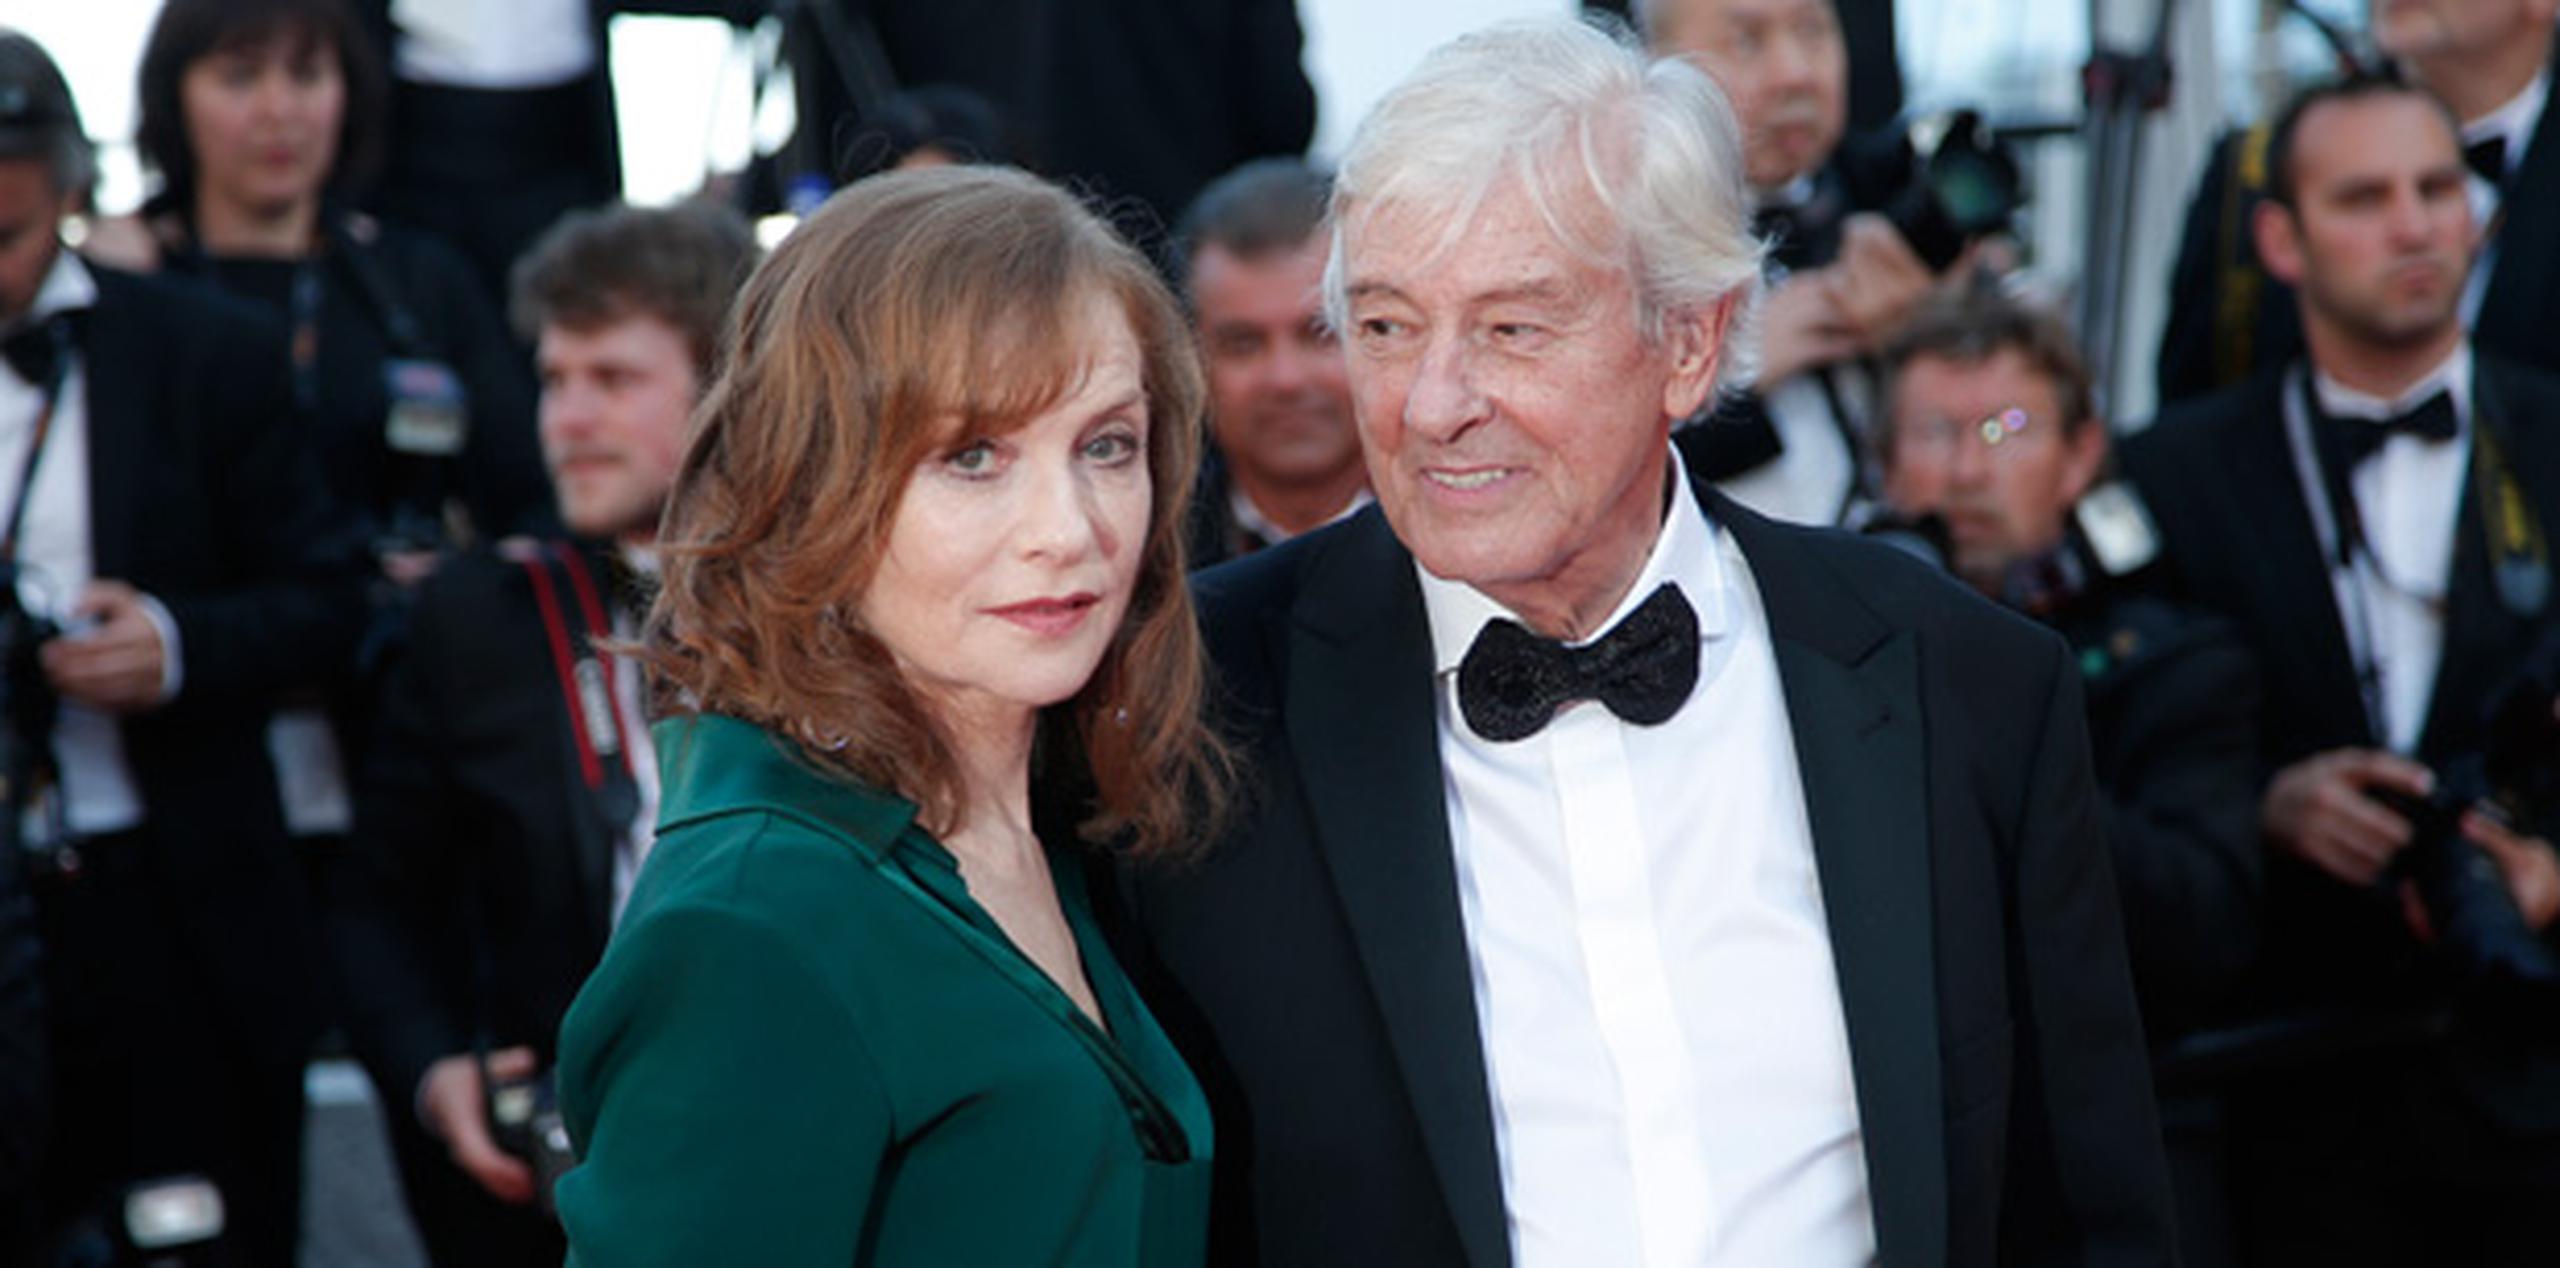 Isabelle Huppert y Paul Verhoeven, protagonista y director de "Elle", respectivamente, presentaron el filme hoy en el Festival de Cannes. (AP)